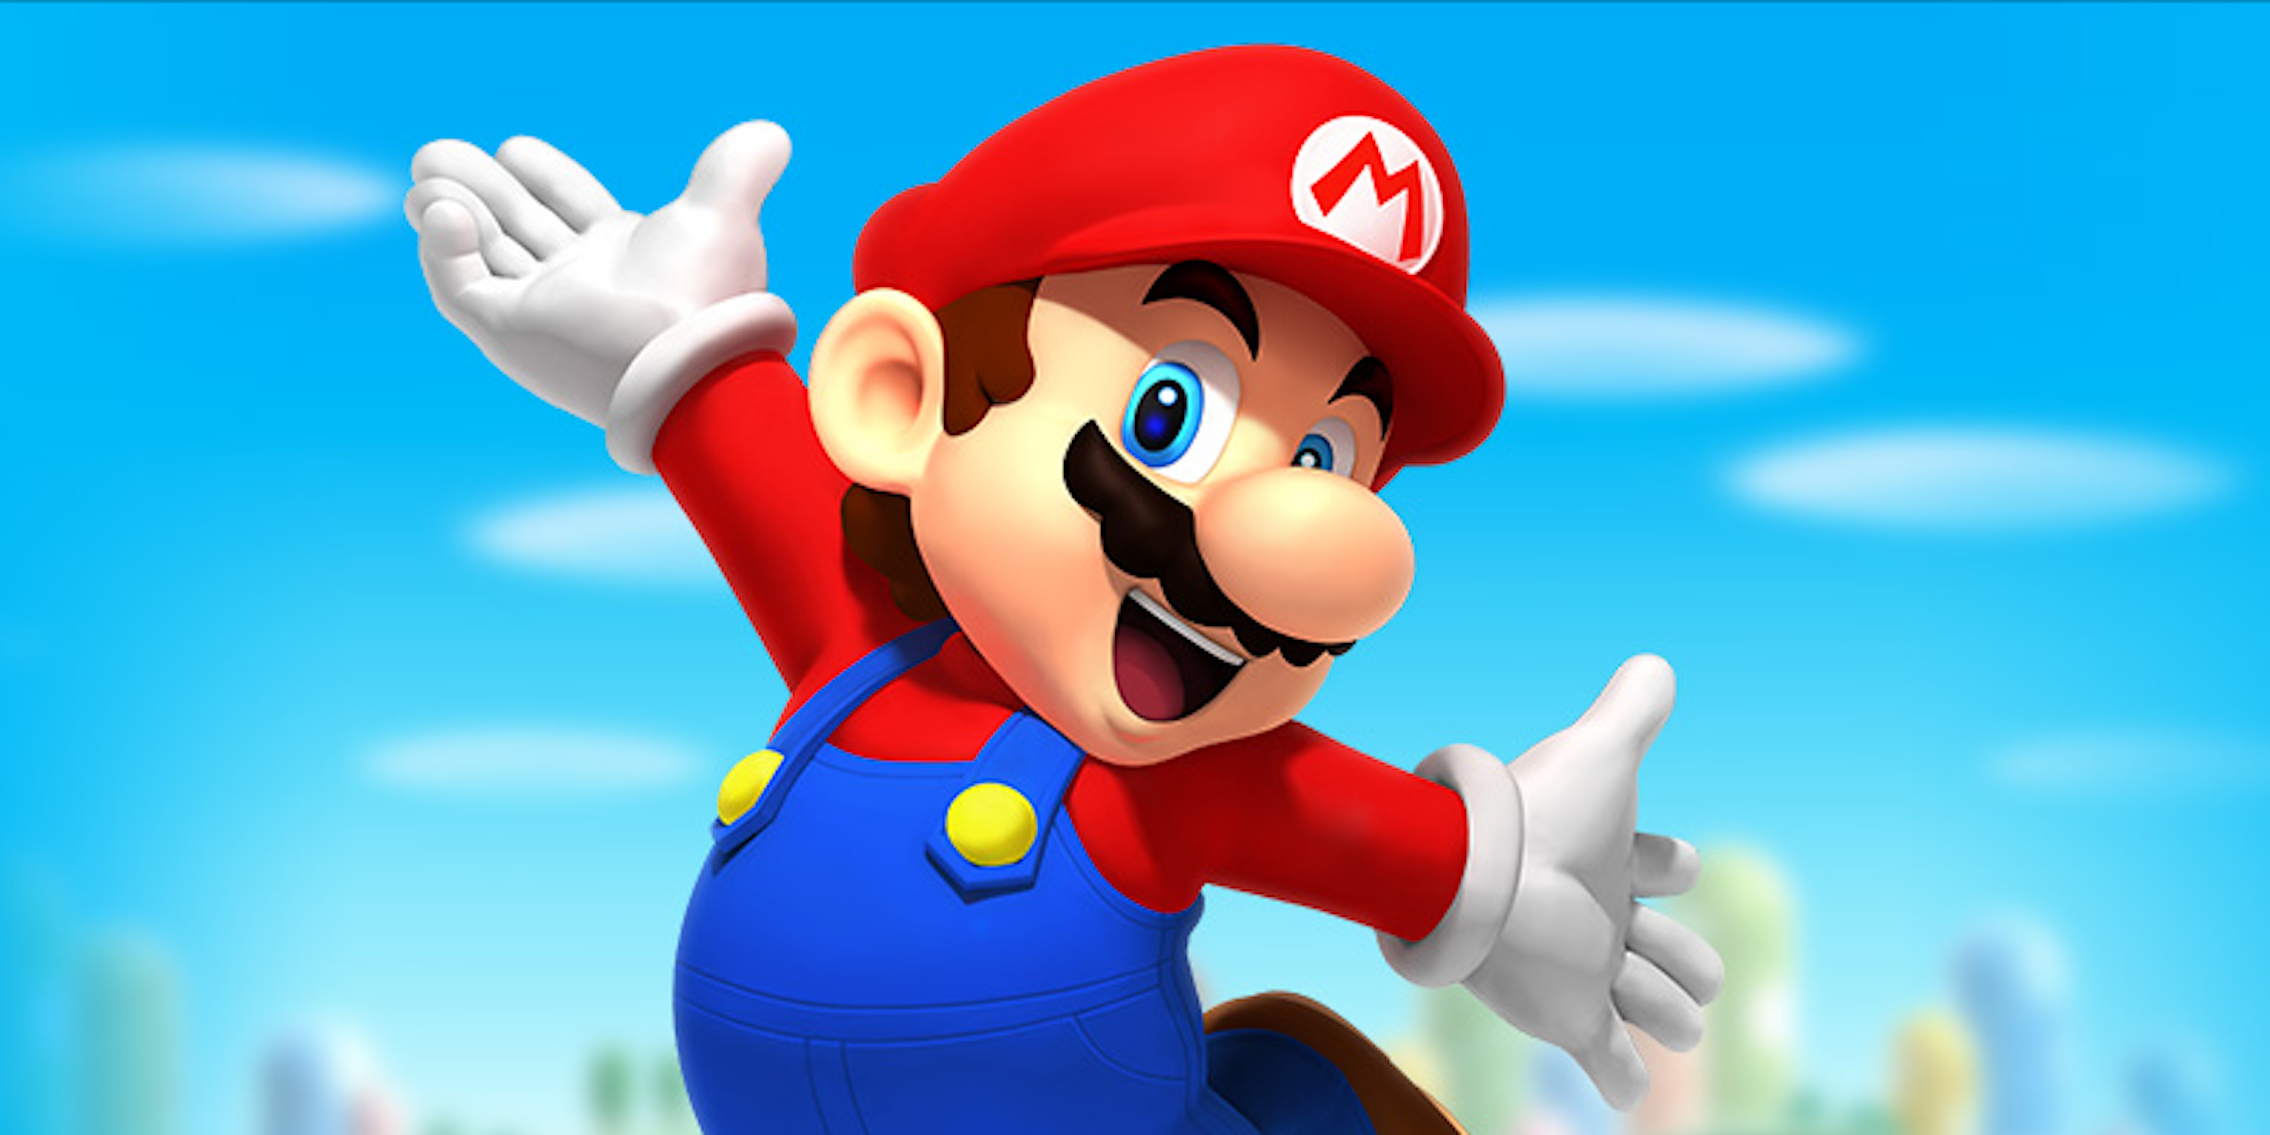 Nintendo Mario Super Mario Run